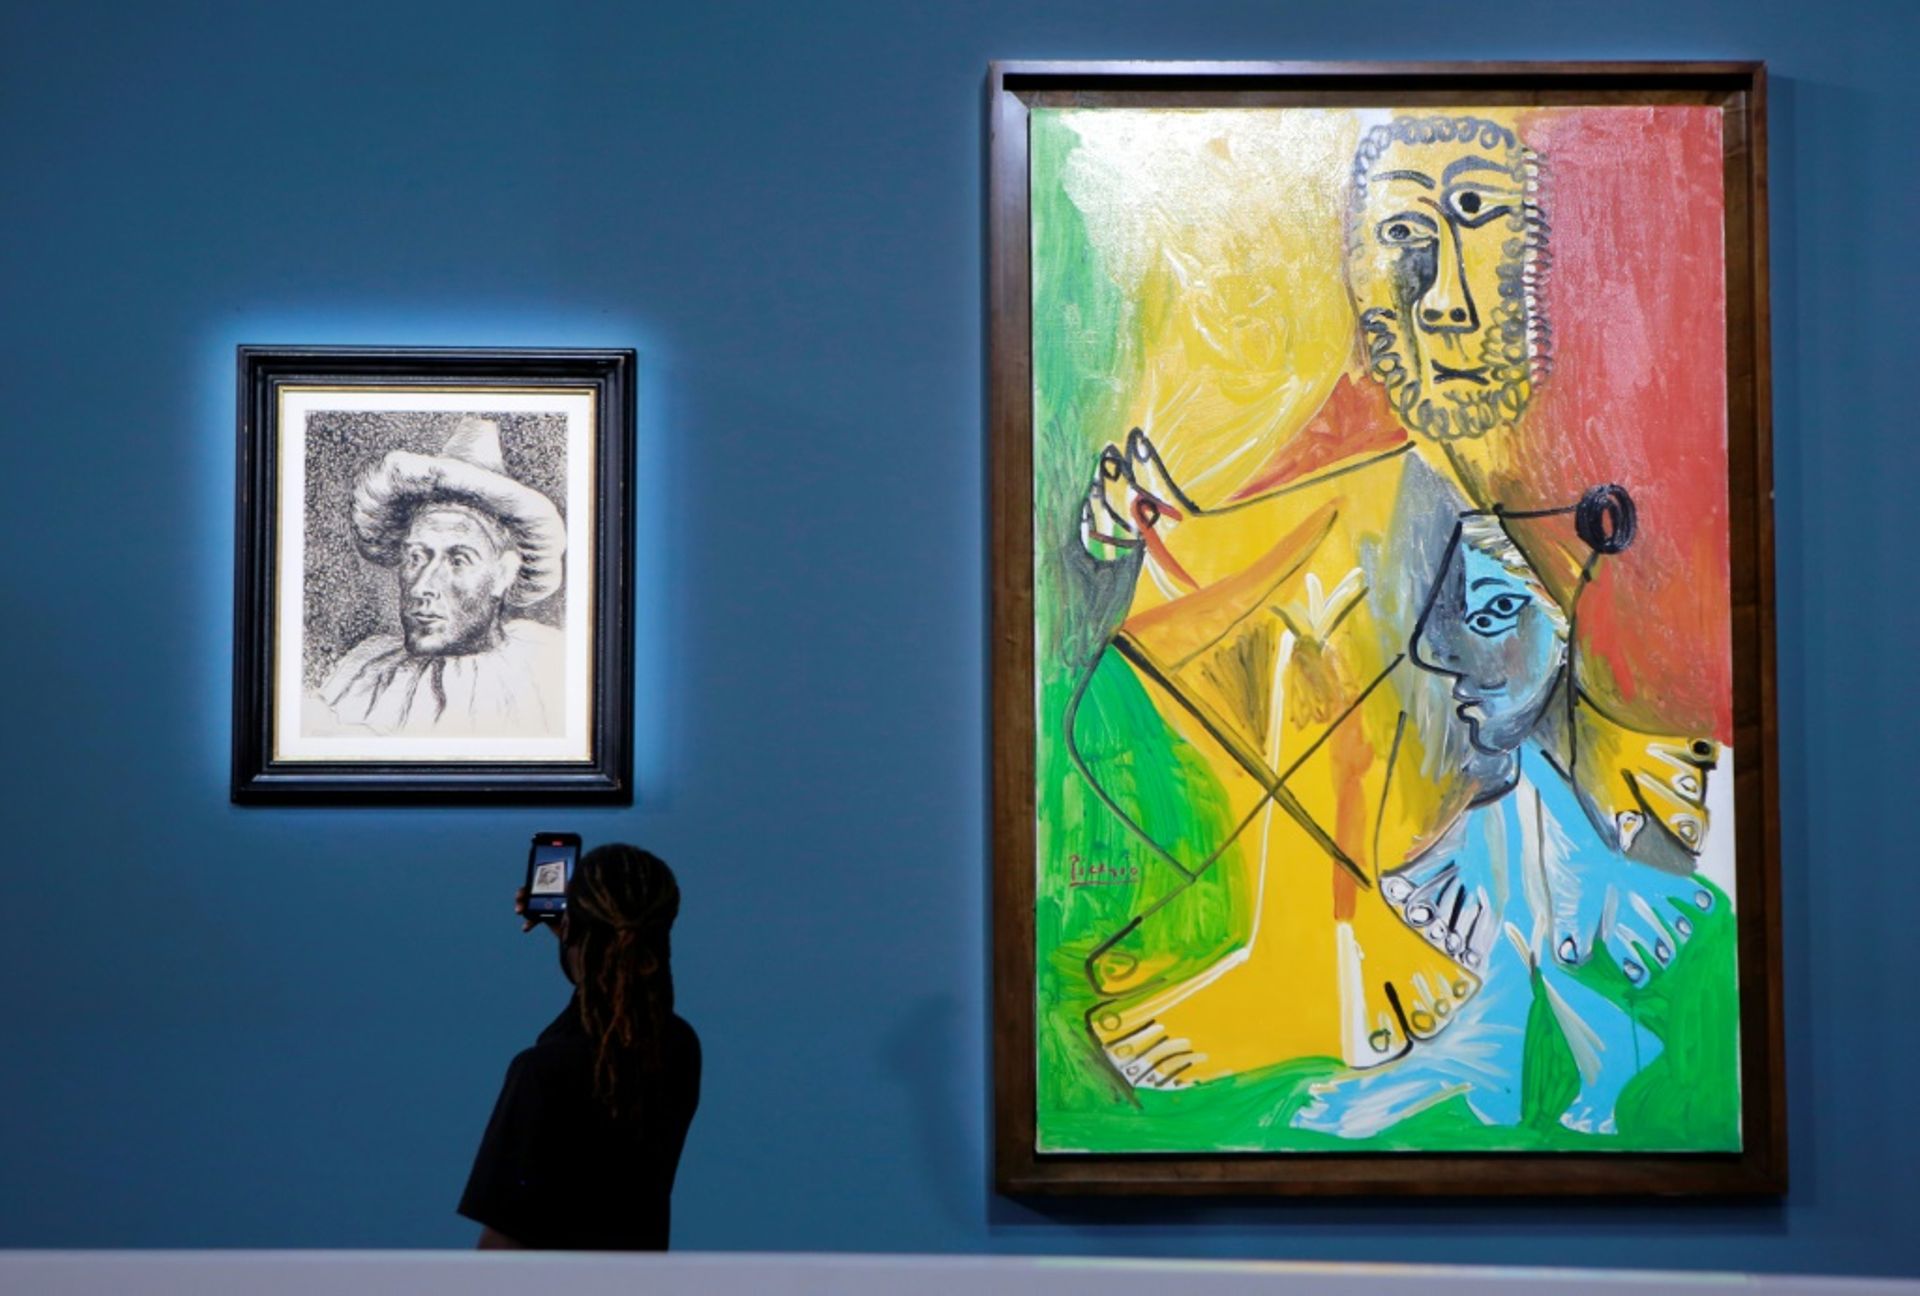 Onze oeuvres de Picasso de la collection MGM Resorts, dont "Pierrot" (g) et "Homme et enfant" (d), vendues aux enchères chez Sotheby's, le 23 octobre 2021 à Las Vegas